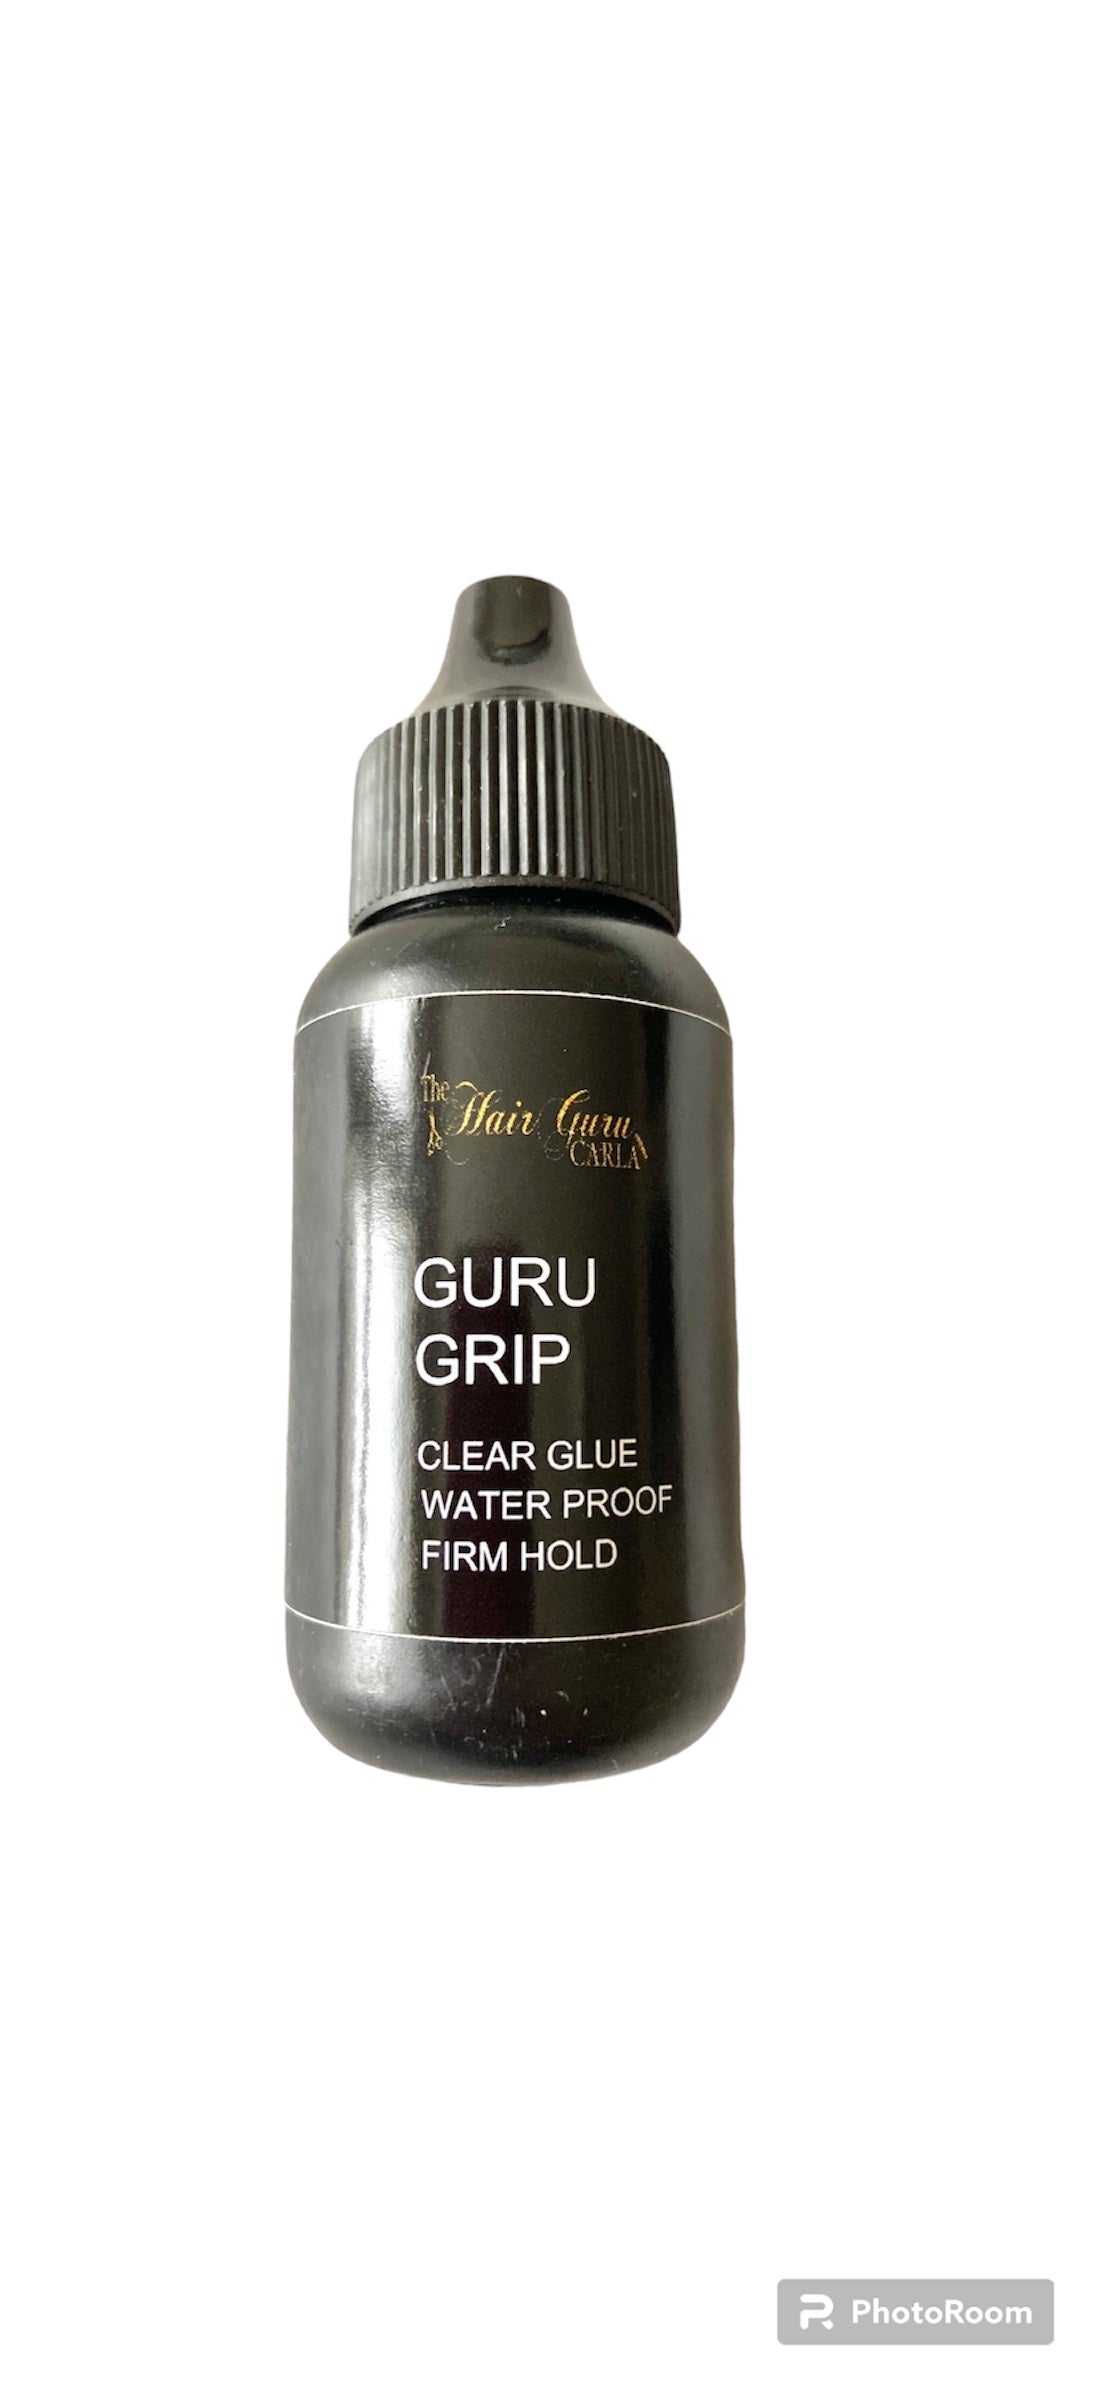 GURU Grip wax Red 0°-4°C, 45g